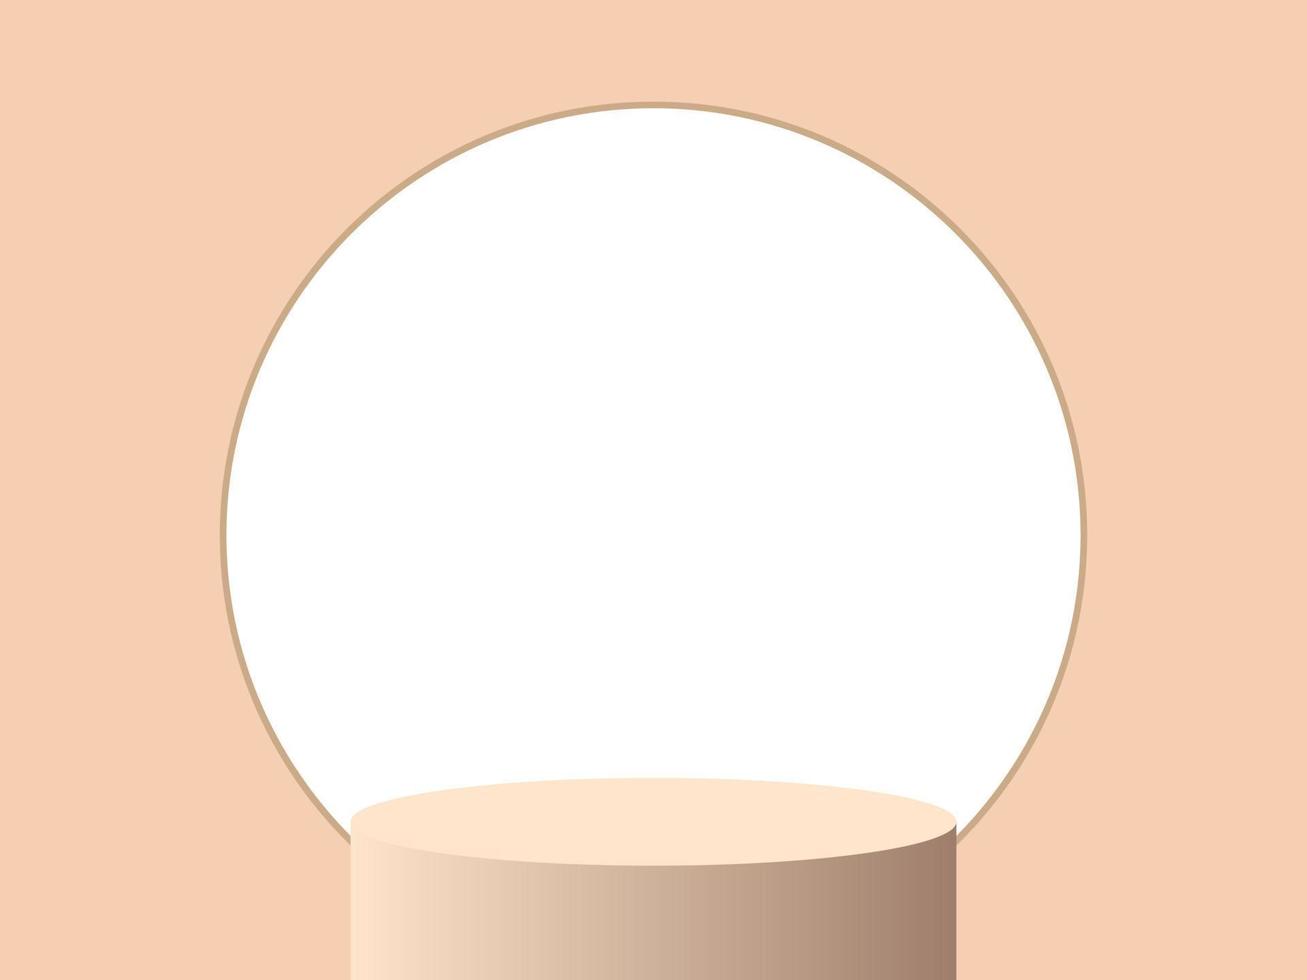 podium de piédestal de cylindre brun clair 3d réaliste avec fenêtre circulaire. scène minimale pour la présentation du produit. plate-forme de rendu vectoriel